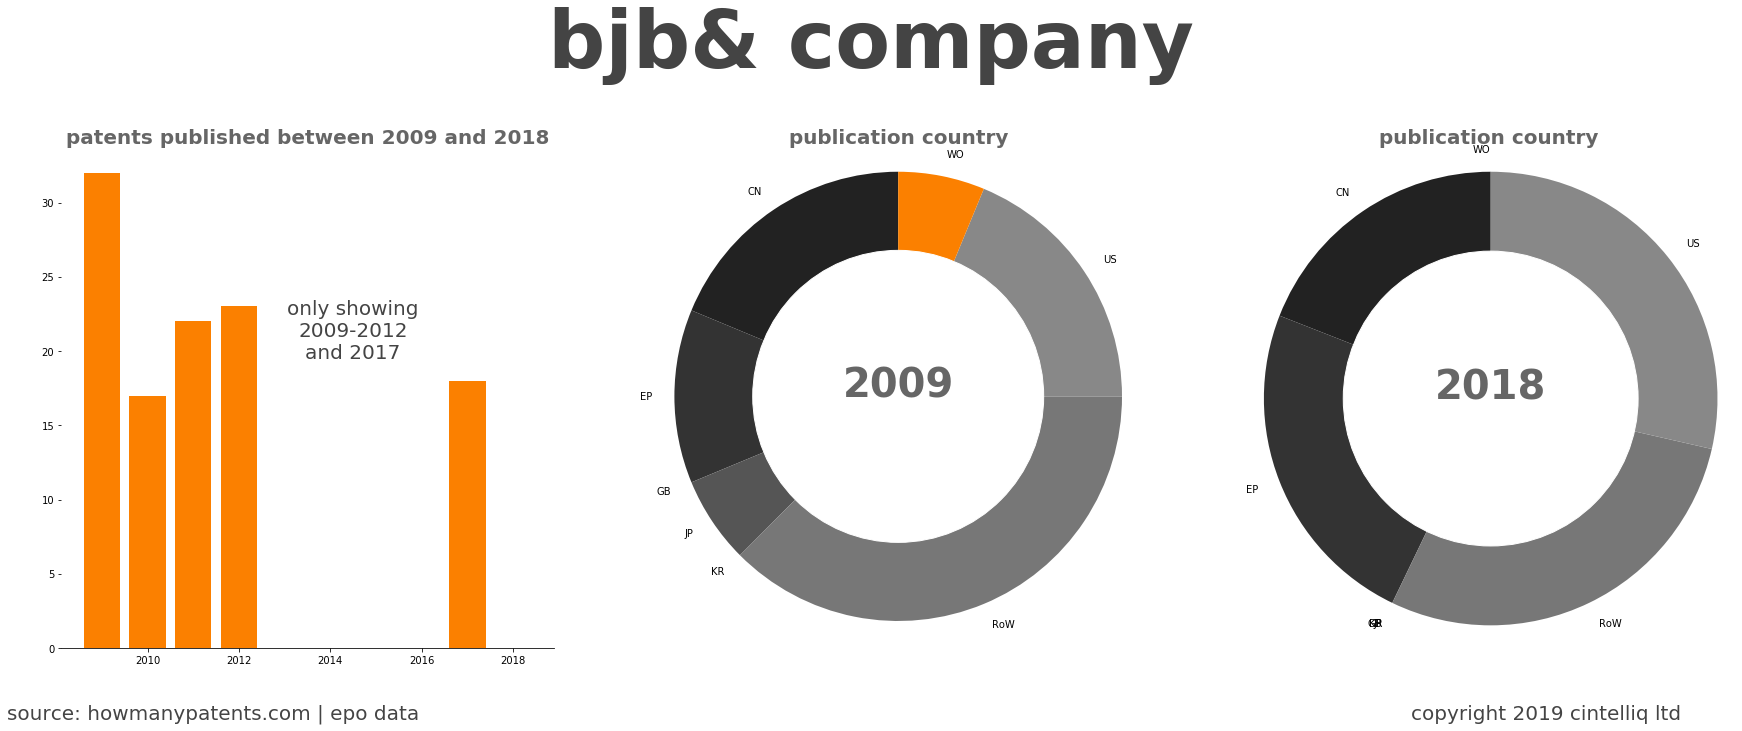 summary of patents for Bjb& Company